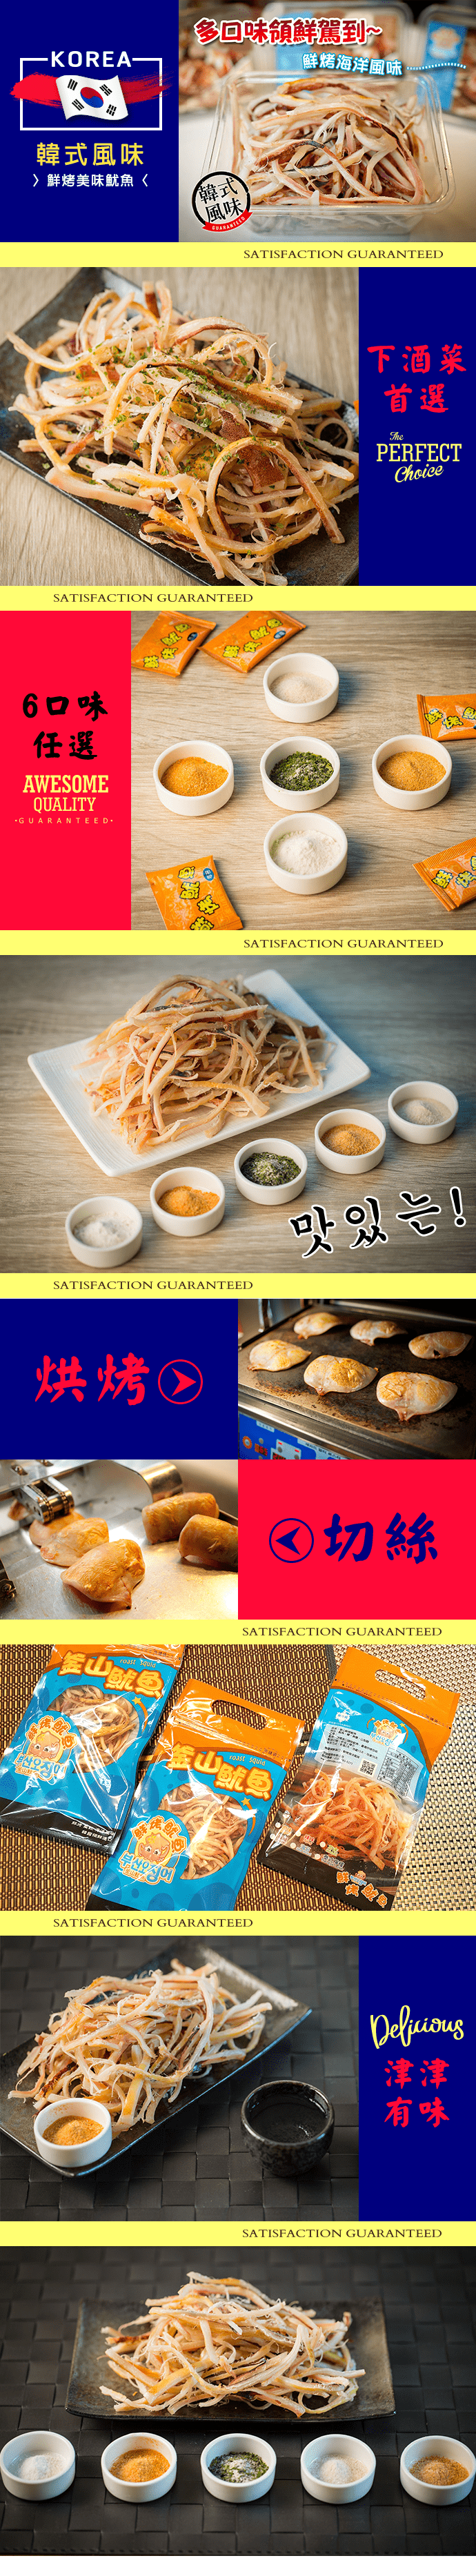 韓國釜山鮮烤魷魚90g (限時加碼指定方案再送烤魷魚)